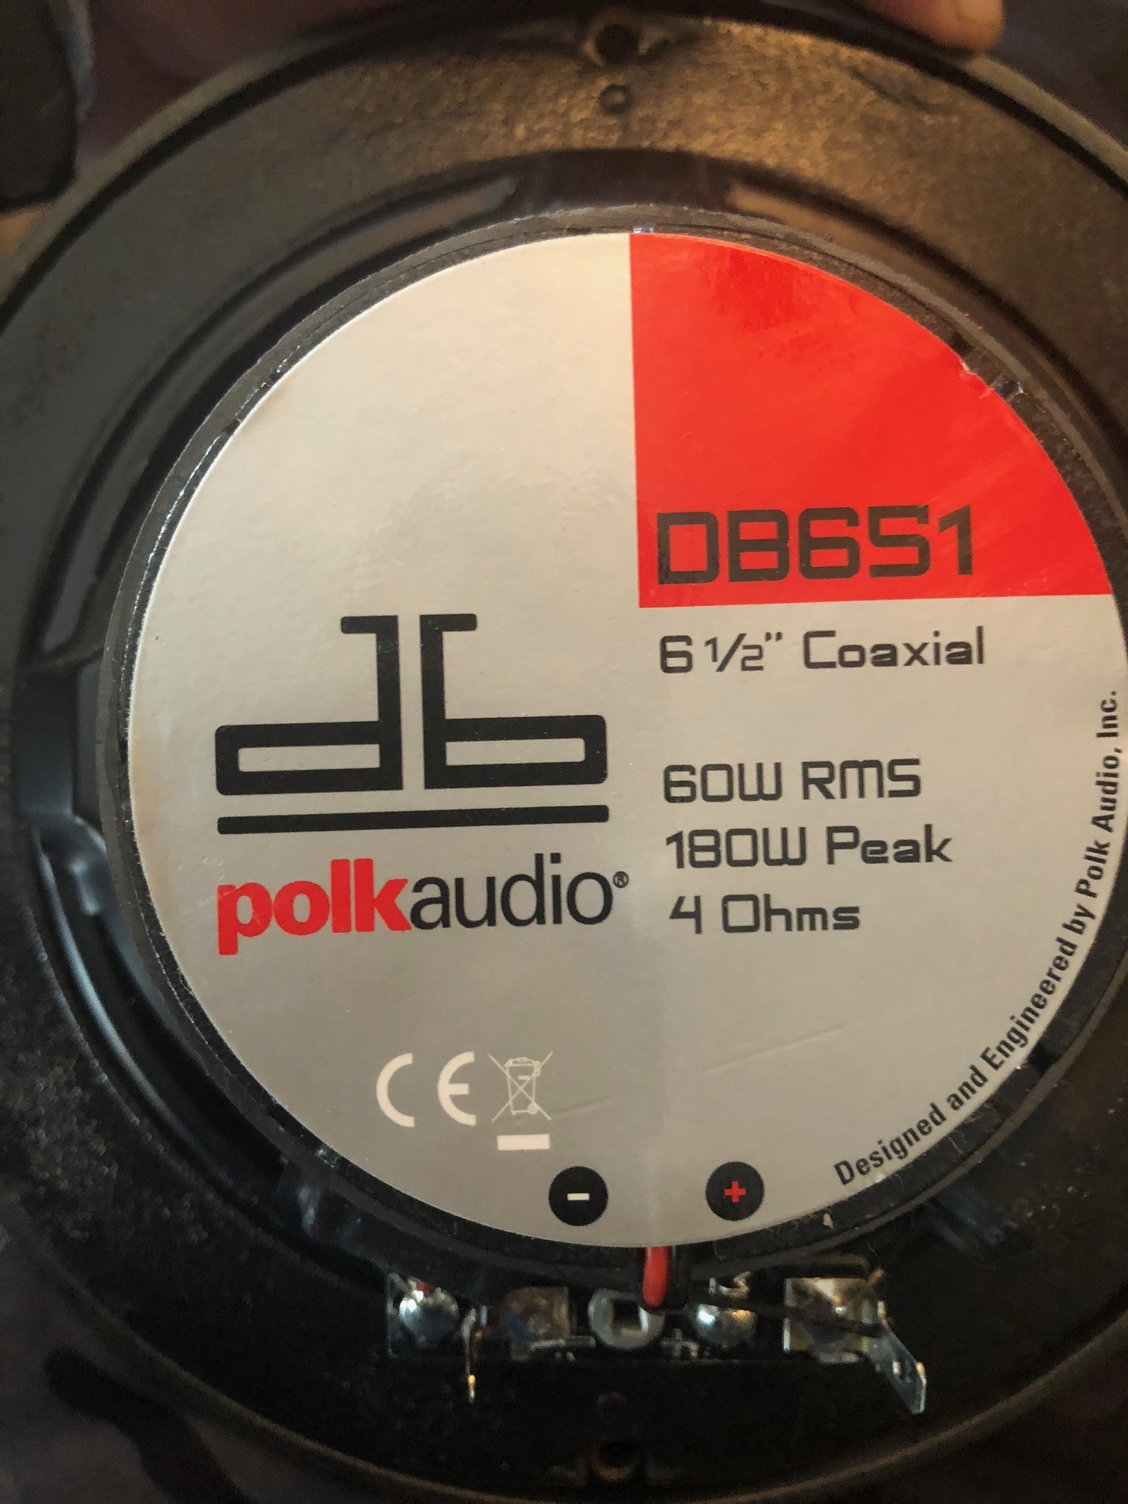 Polk Audio DB651 6.5"/6.75" 2-Way Marine Certified db Series Car Speakers wit... 